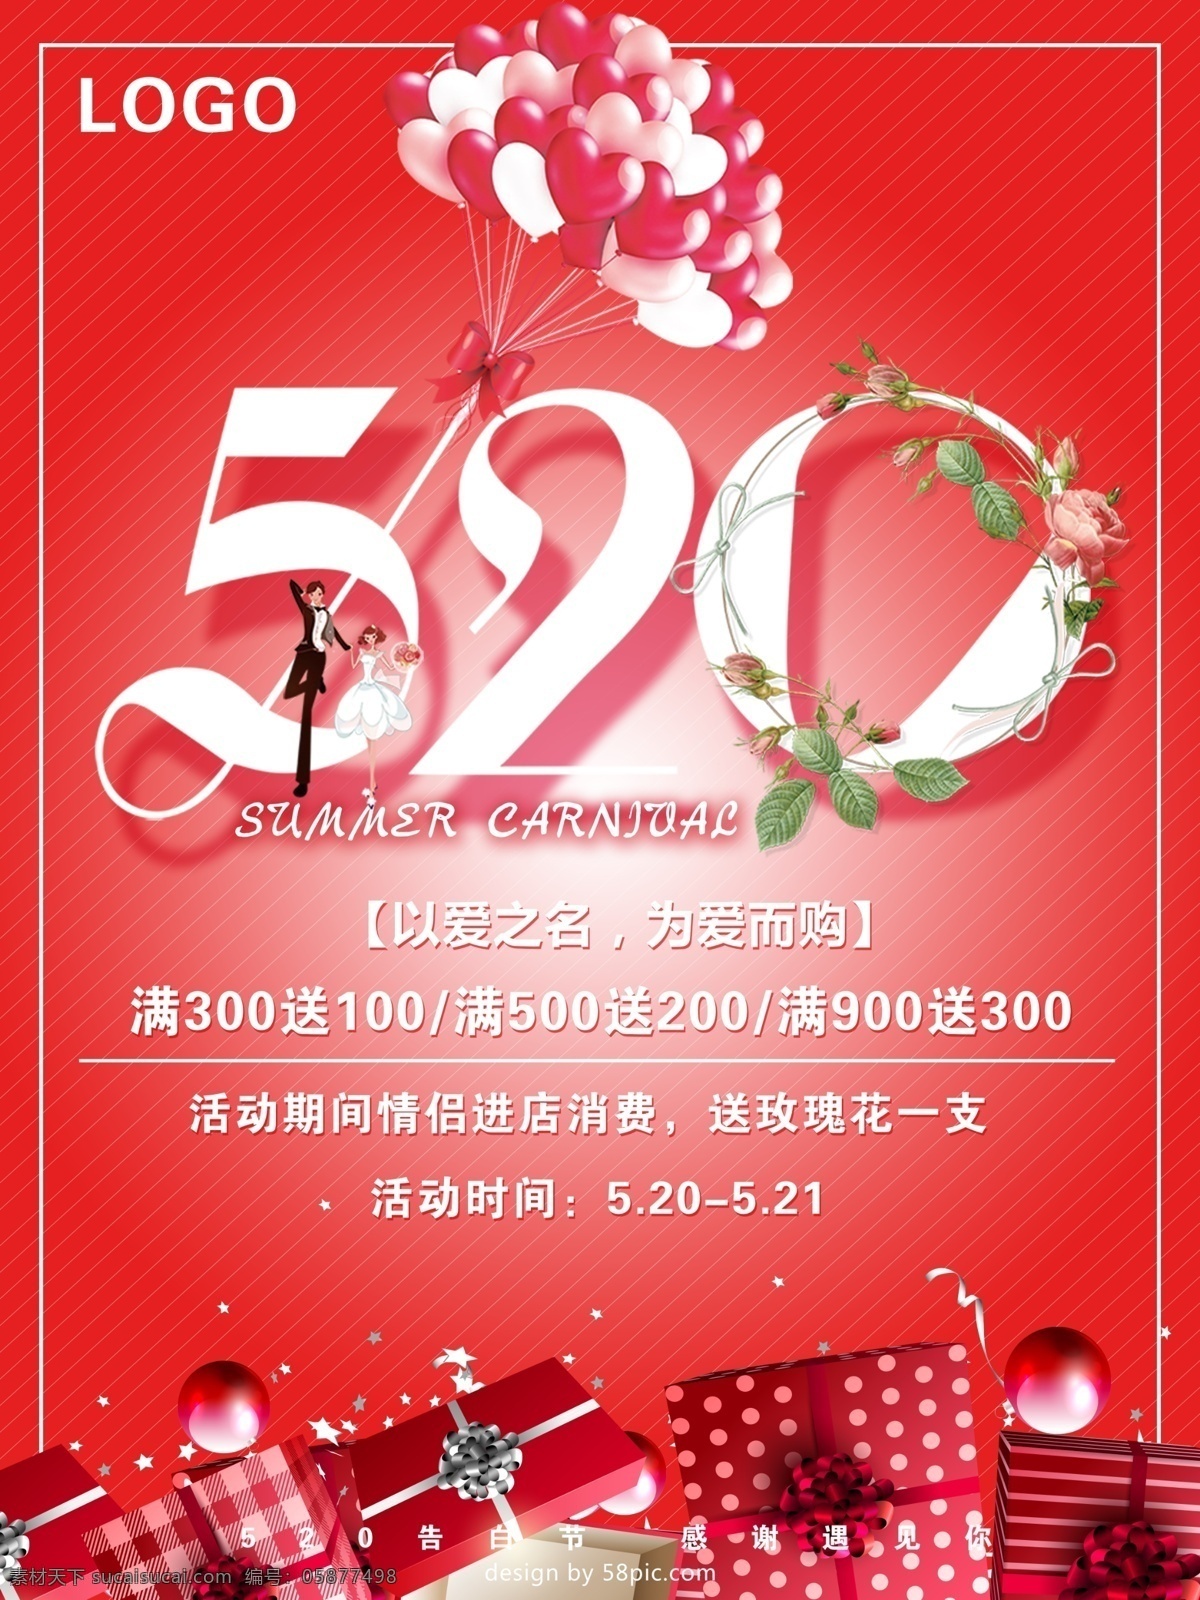 红色 浪漫 520 促销 海报 促销海报 气球 宣传海报 浪漫唯美 520促销